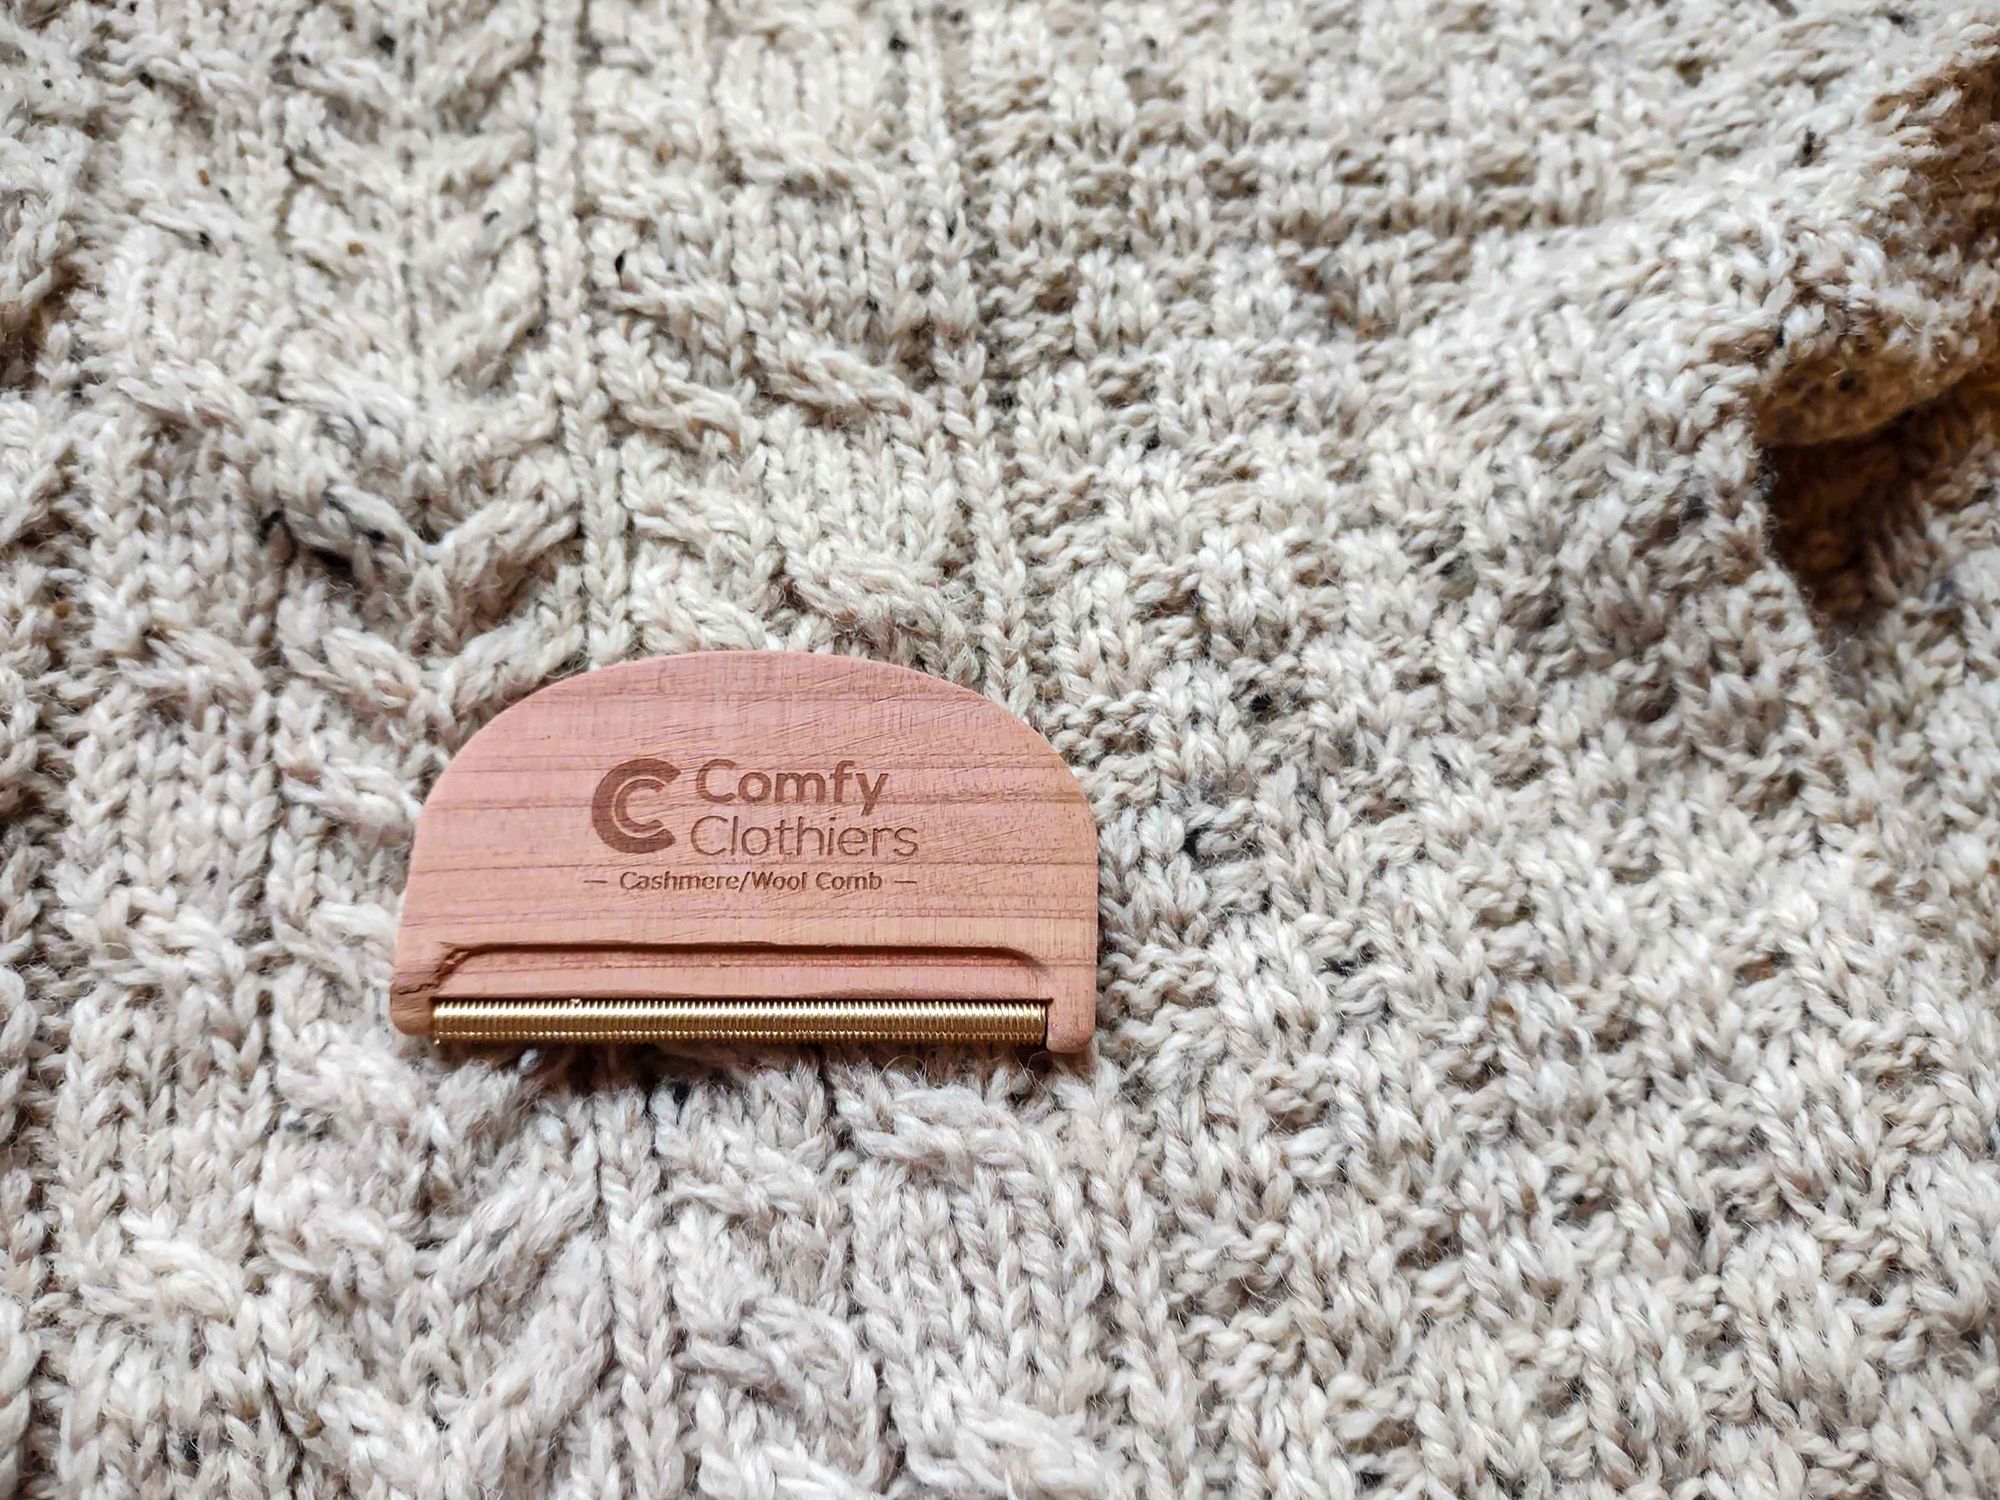 Multi-Fabric Cedar Wood Sweater Comb